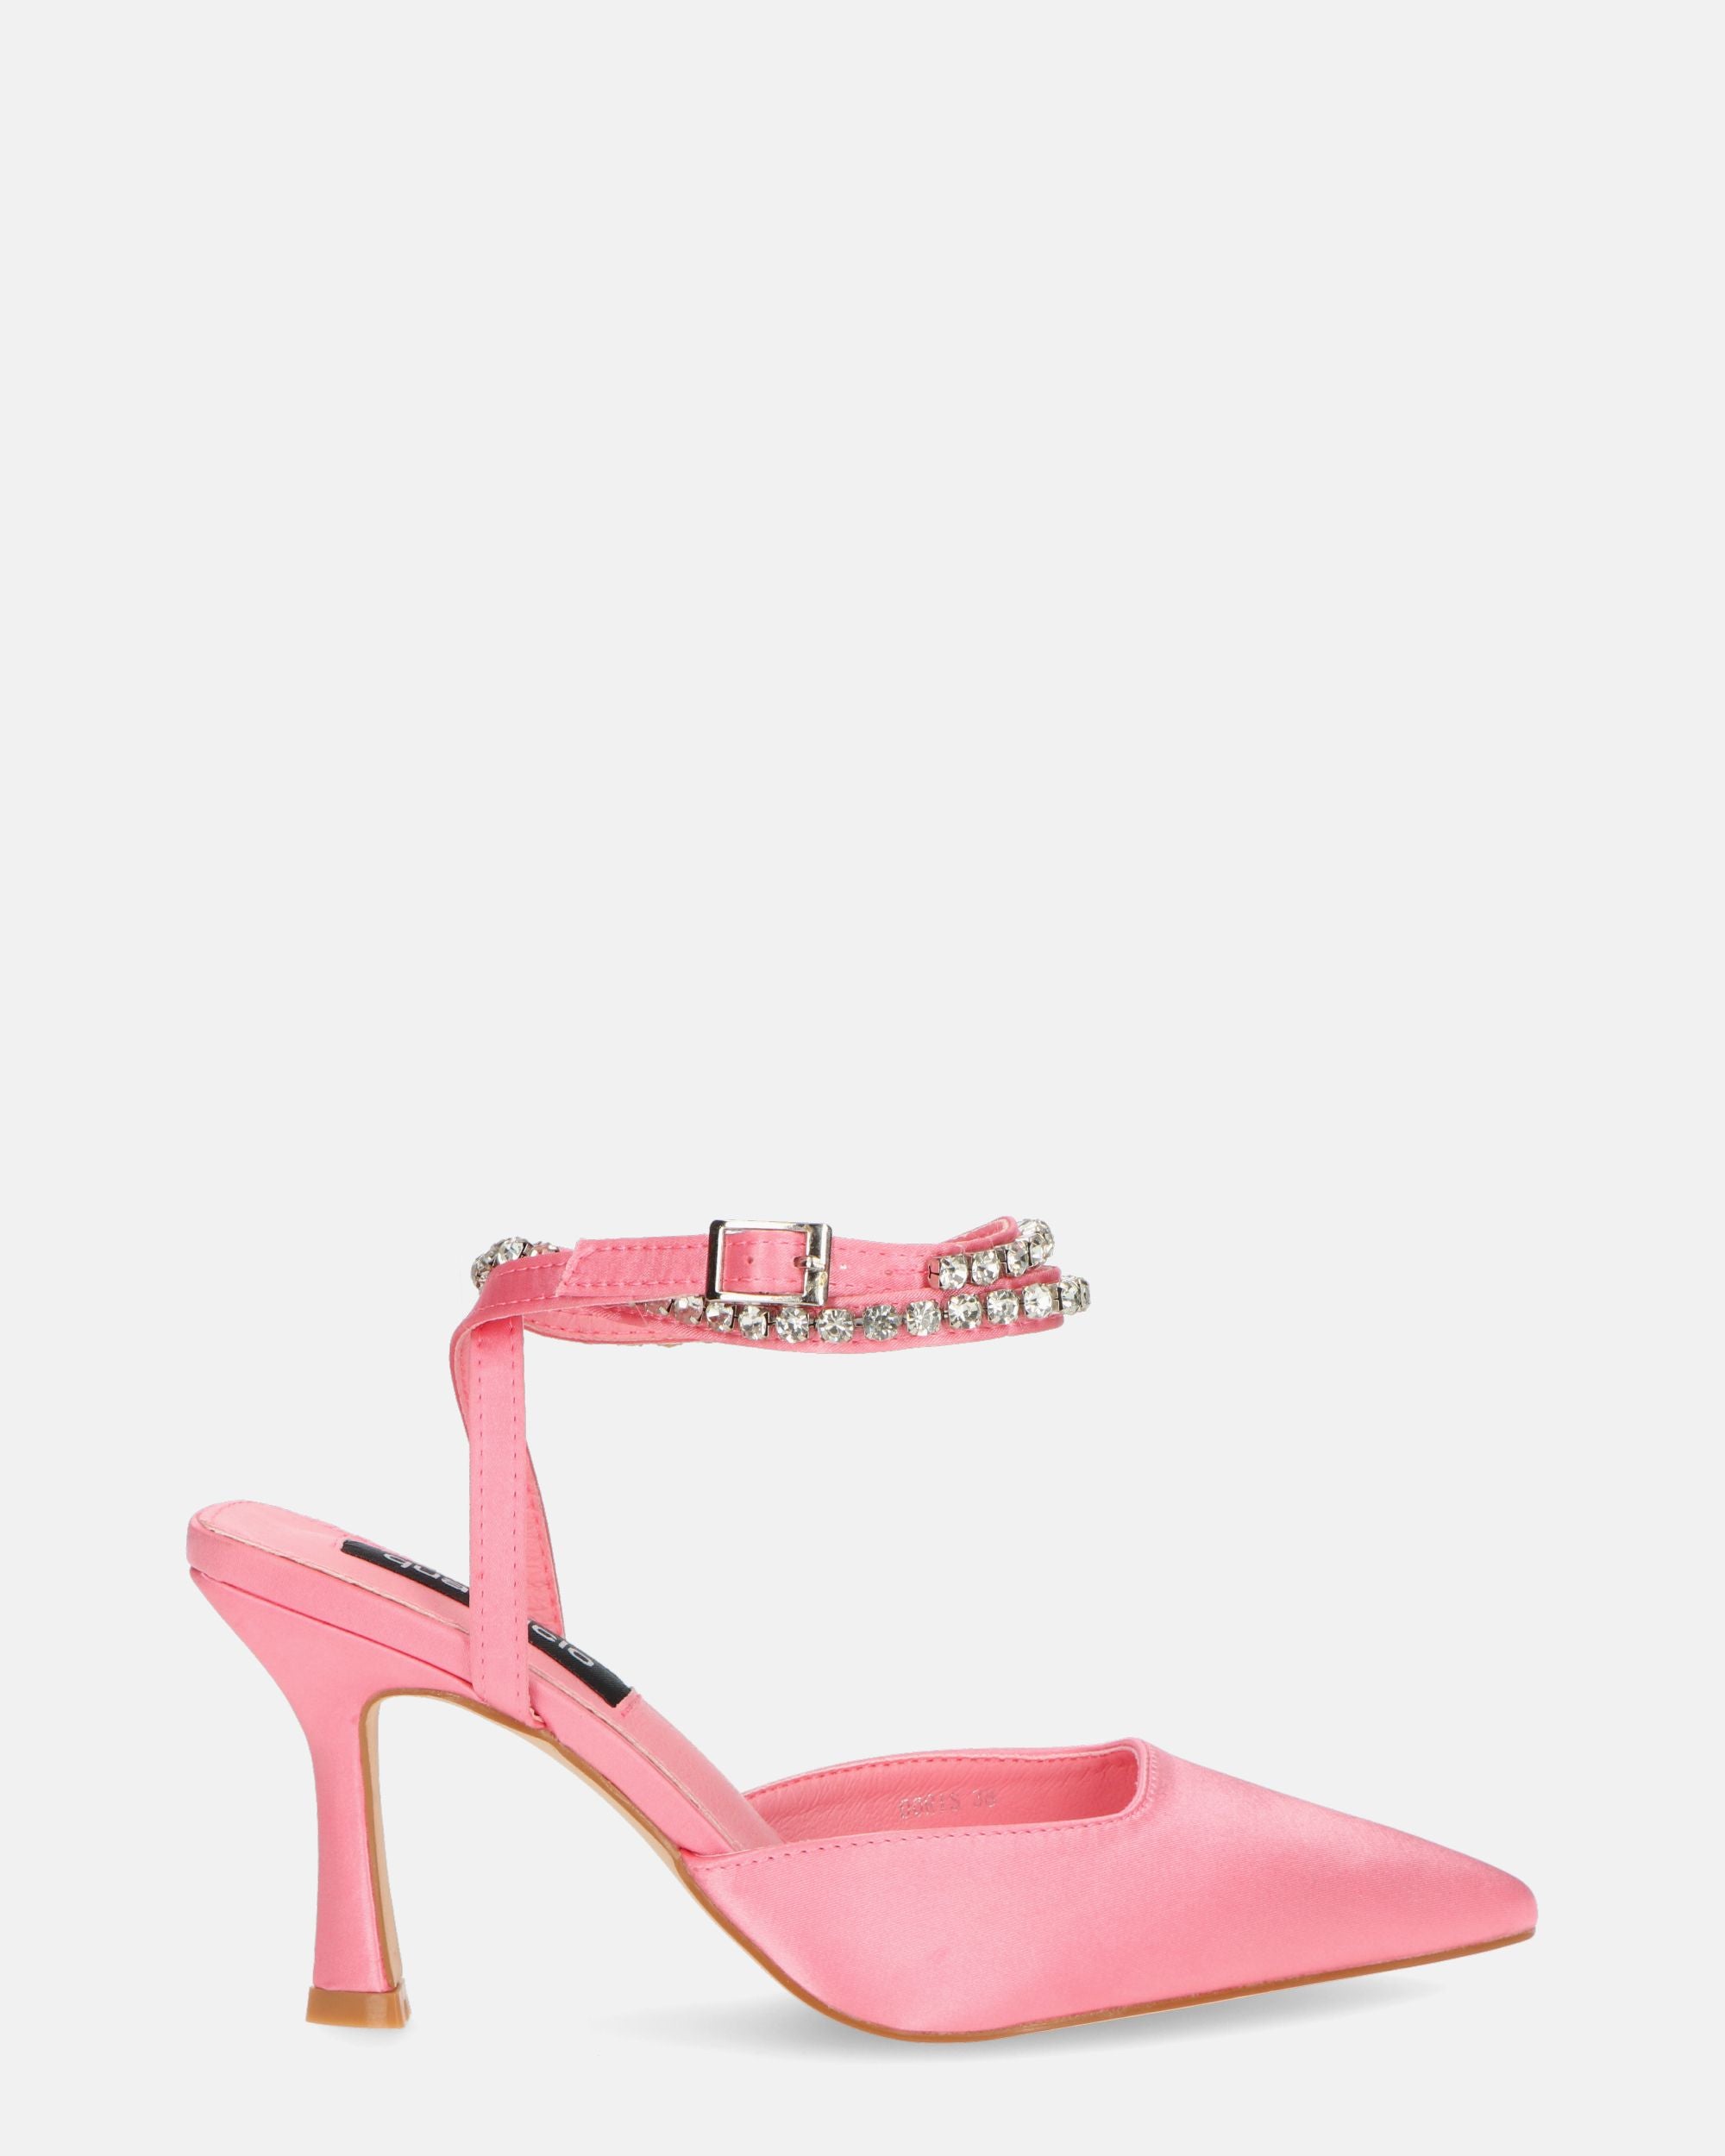 DORIS - zapatos de tacón en lycra rosa claro y pedrería en la tira